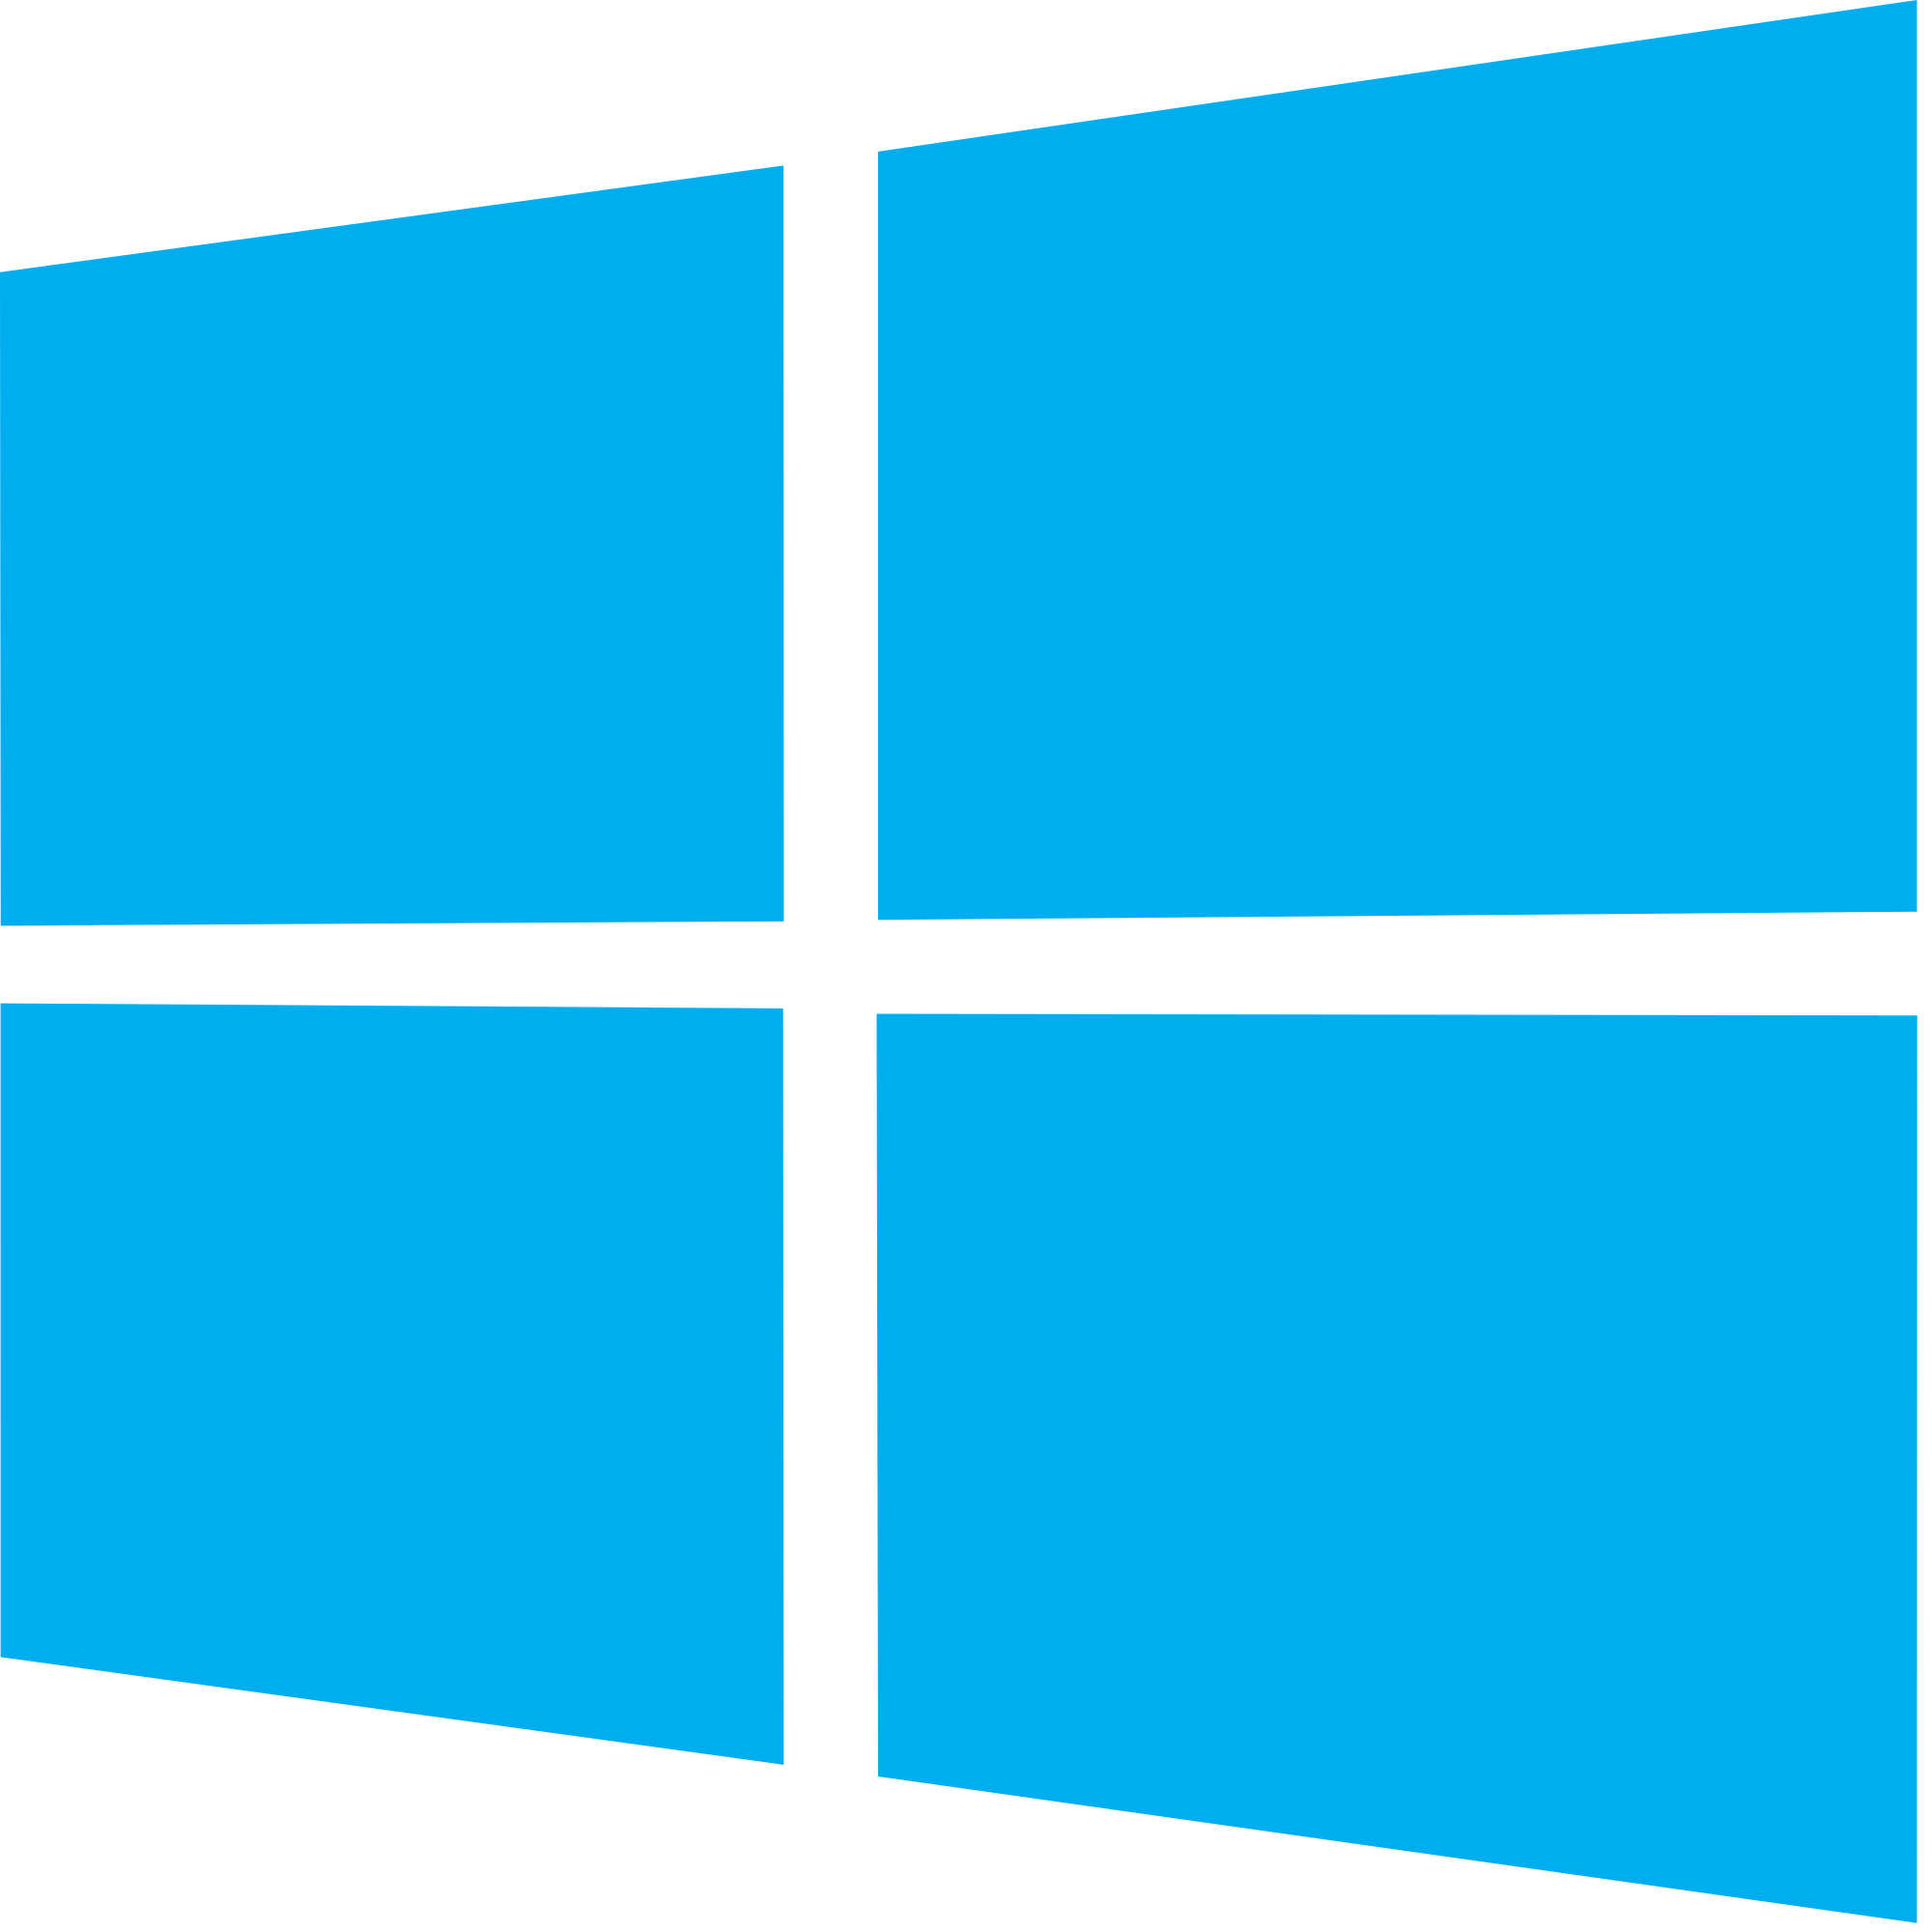 Windows logos PNG images free download, windows logo PNG.